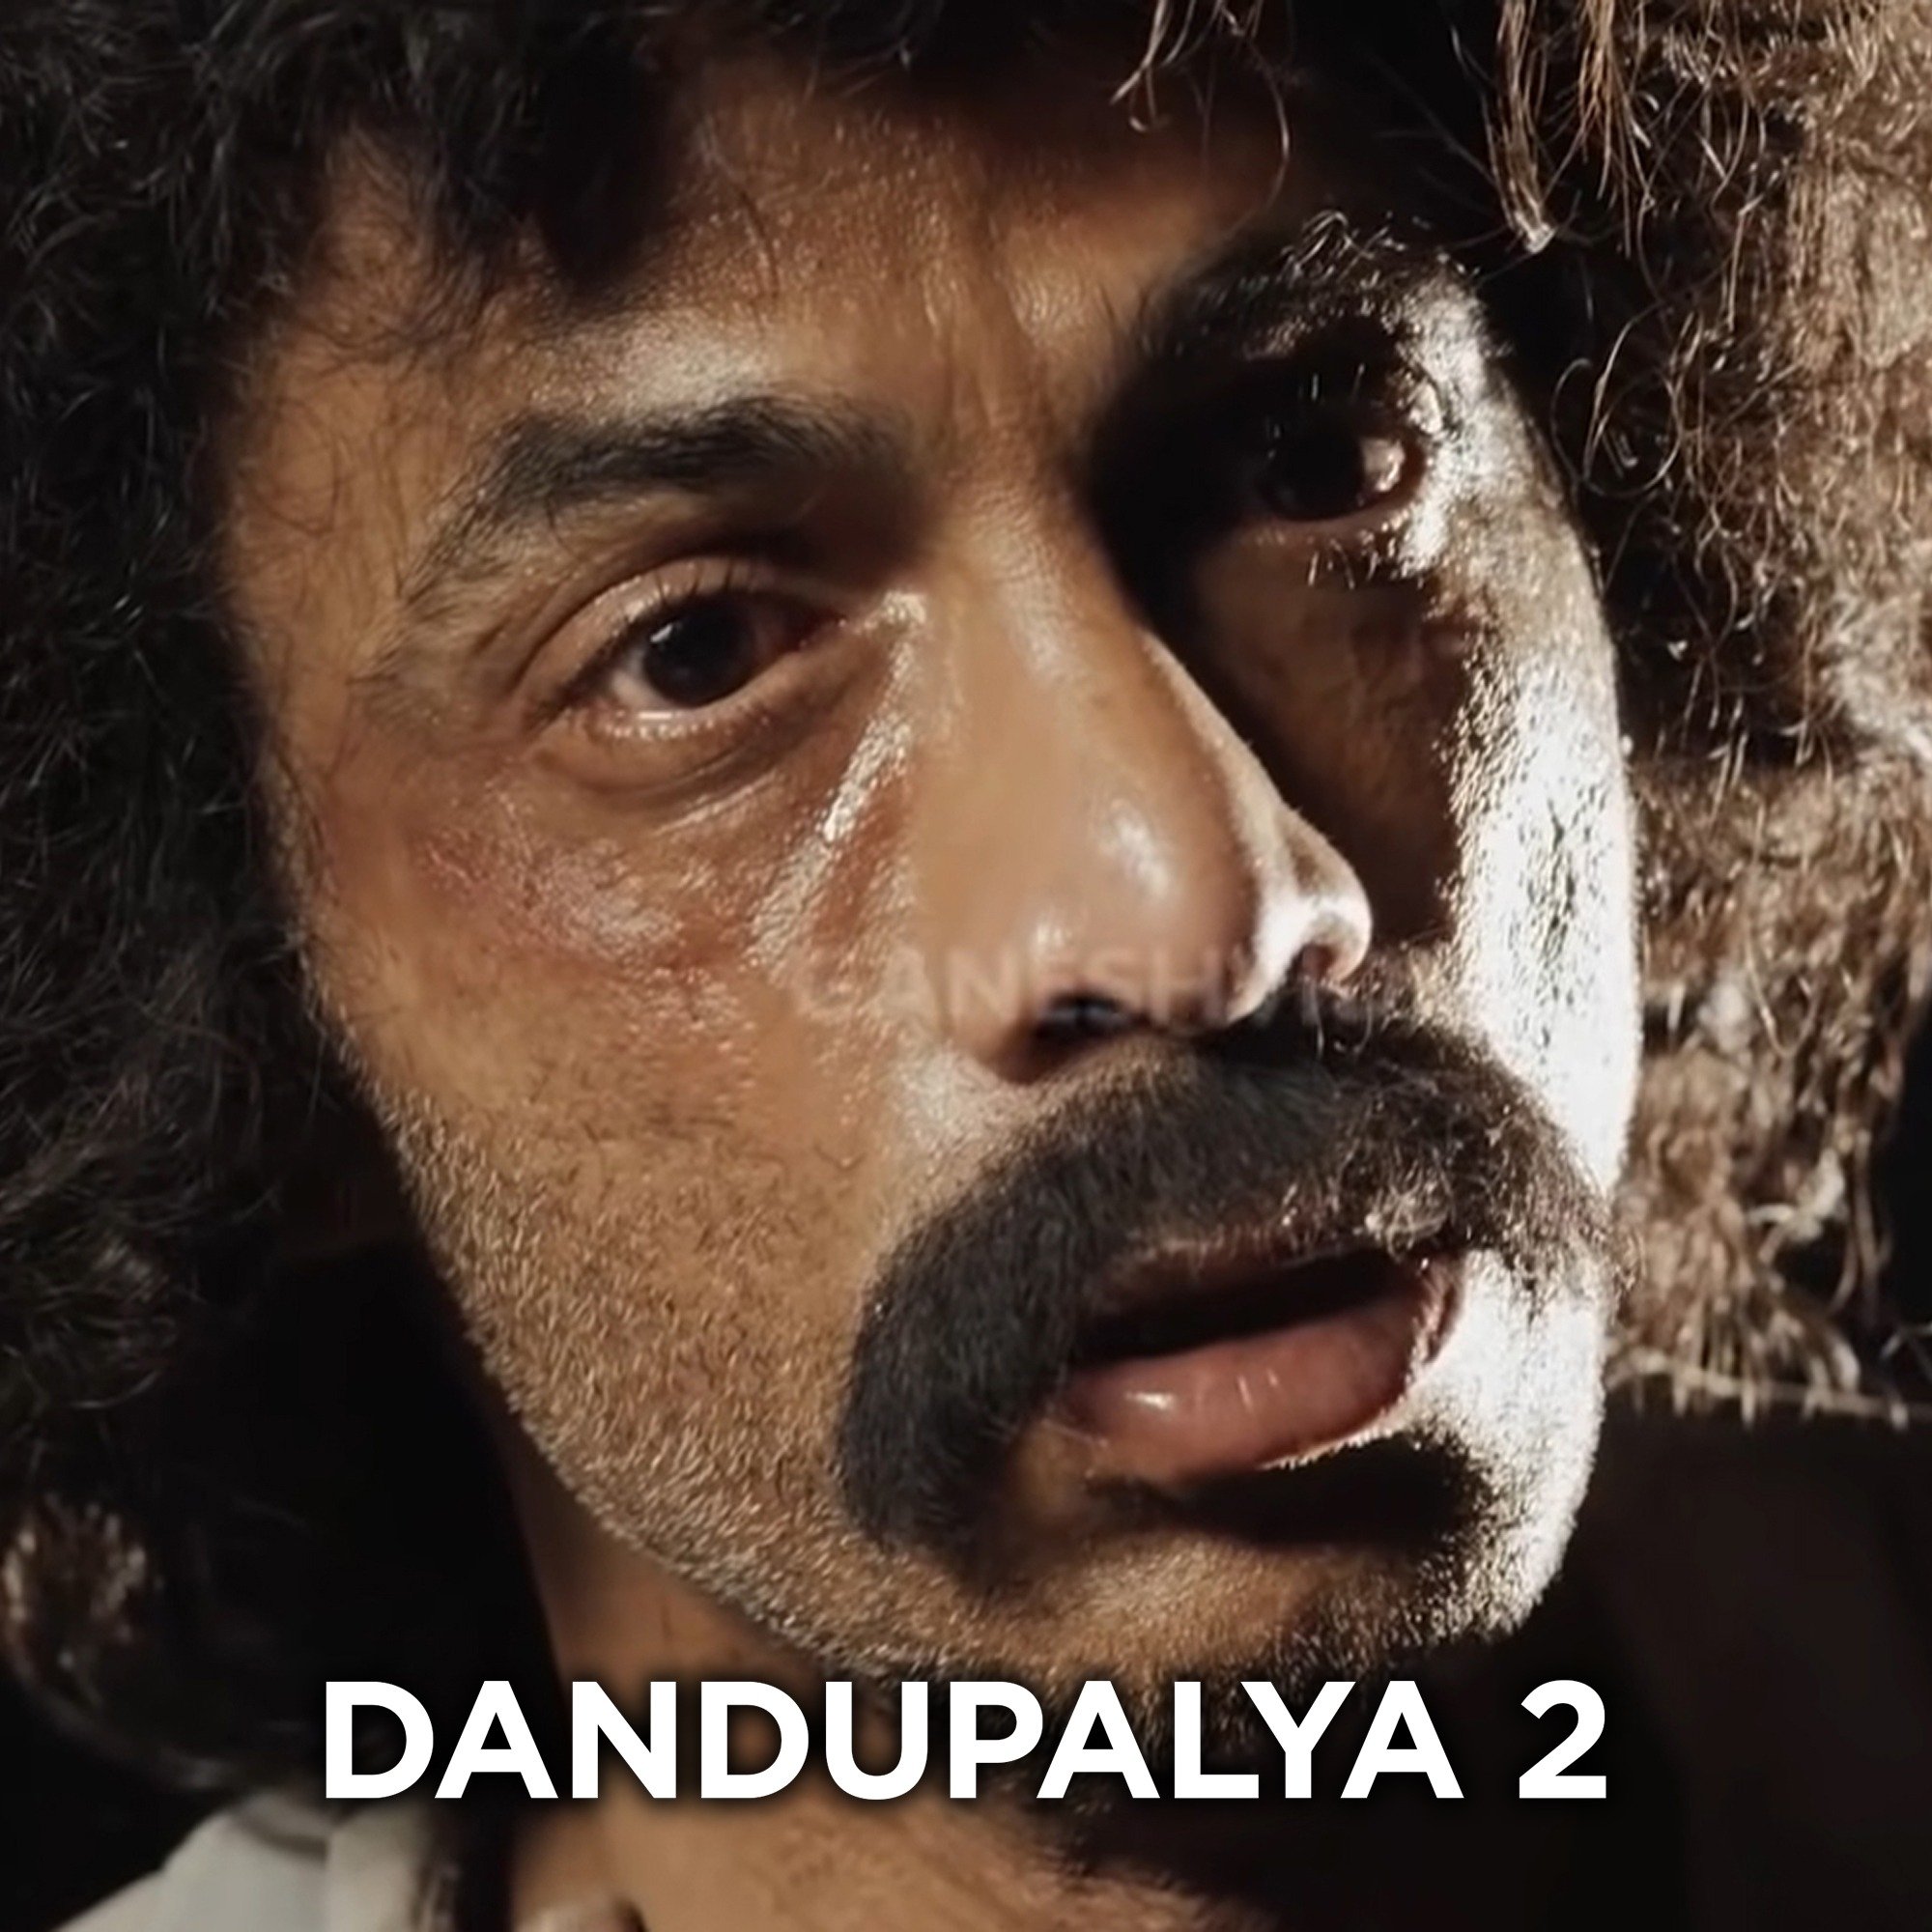 chaz ellis add dandupalya 2 movie online photo